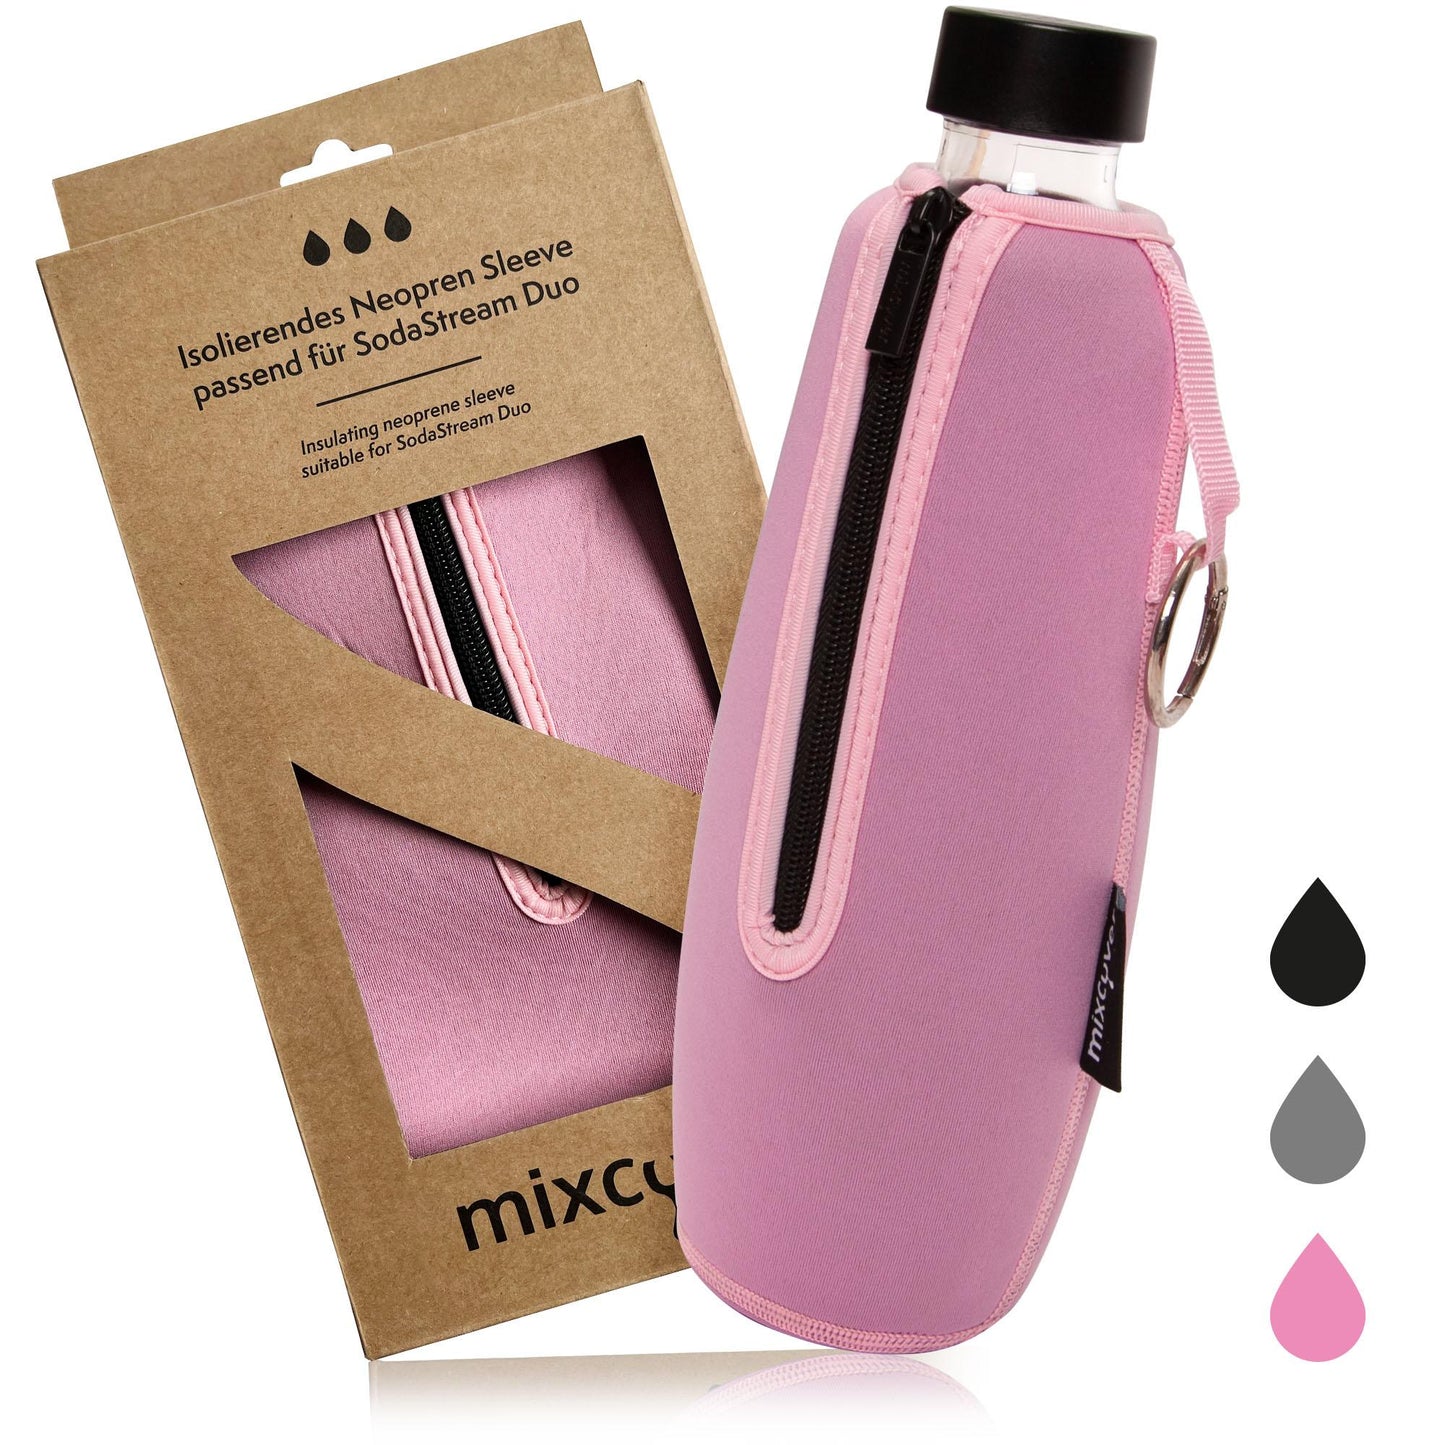 MixCover geïsoleerde flesbeschermingshuls compatibel met Sodastream duo glazen flessen snelle deksel voor flessen, bescherming tegen breuk en krassen, kleurroze